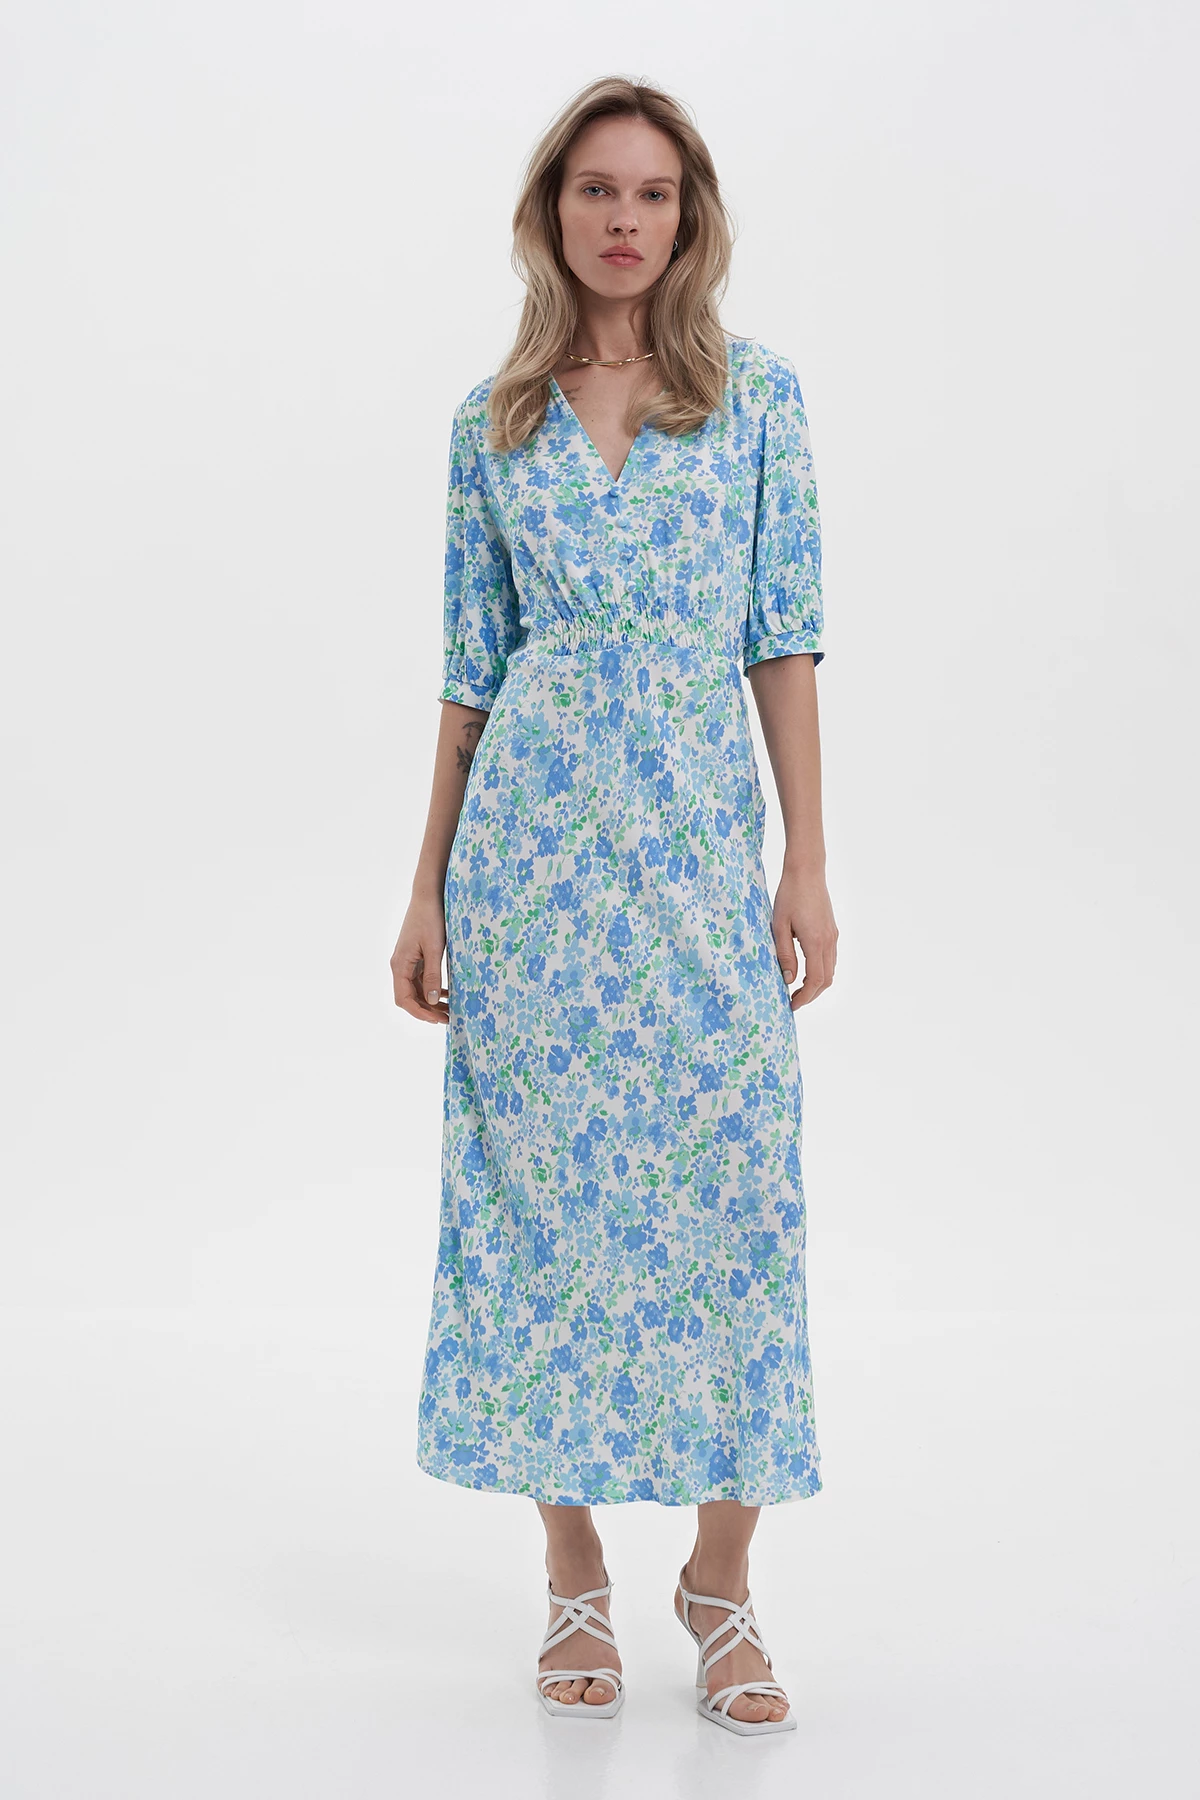 Сукня міді з коротким рукавом в принт "блакитні квіти" зі 100% віскози, фото 1